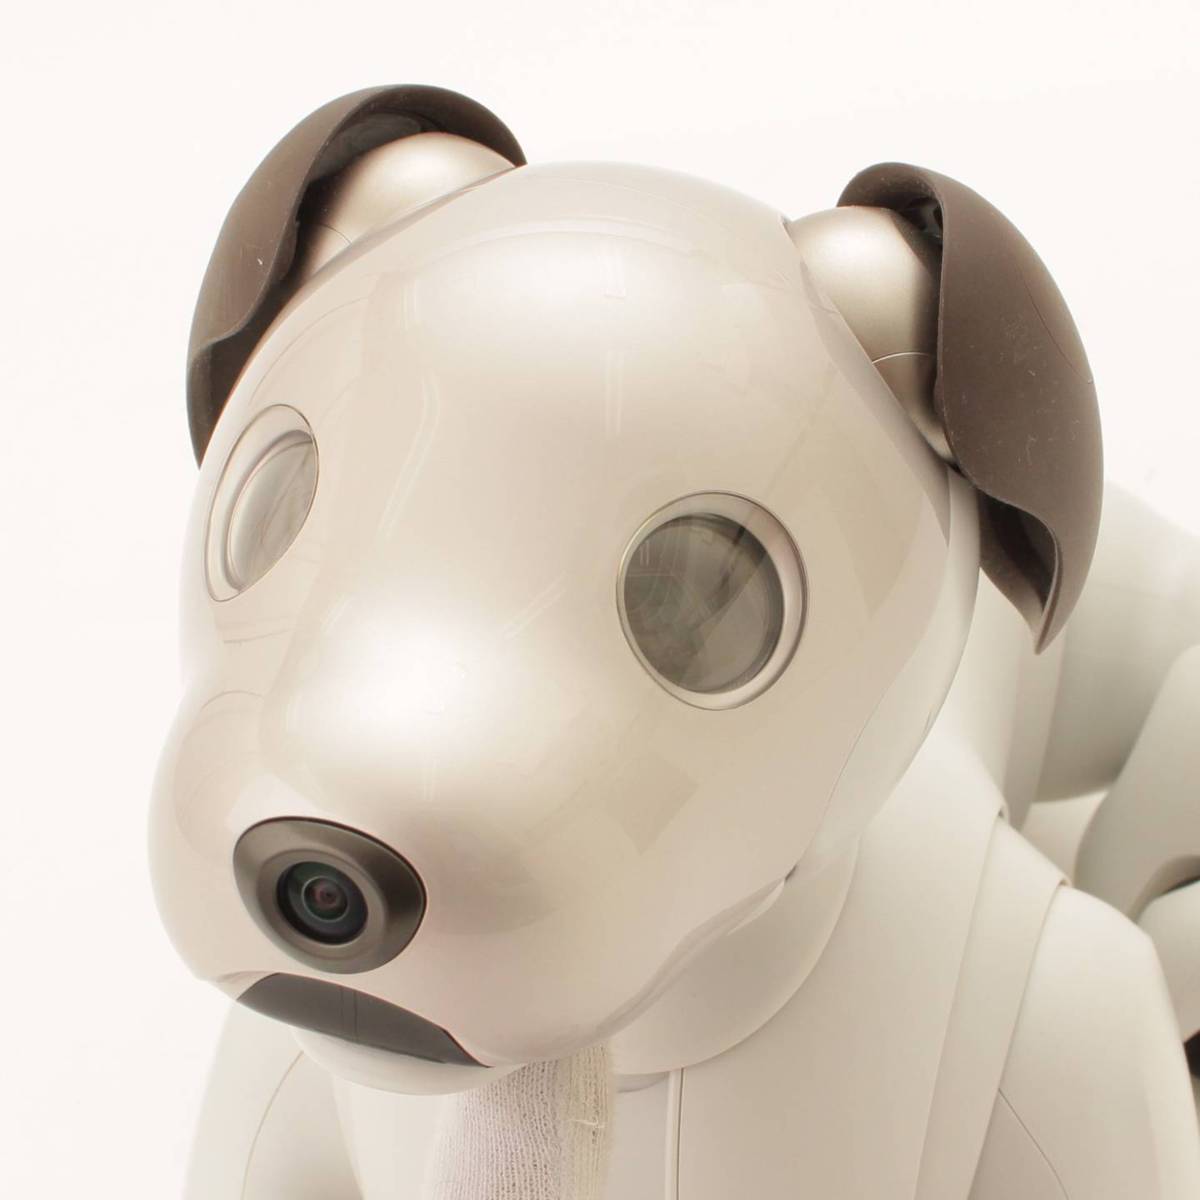 ソニー(SONY) アイボ aibo 犬 ペット ロボット ERS-1000 アイボーン